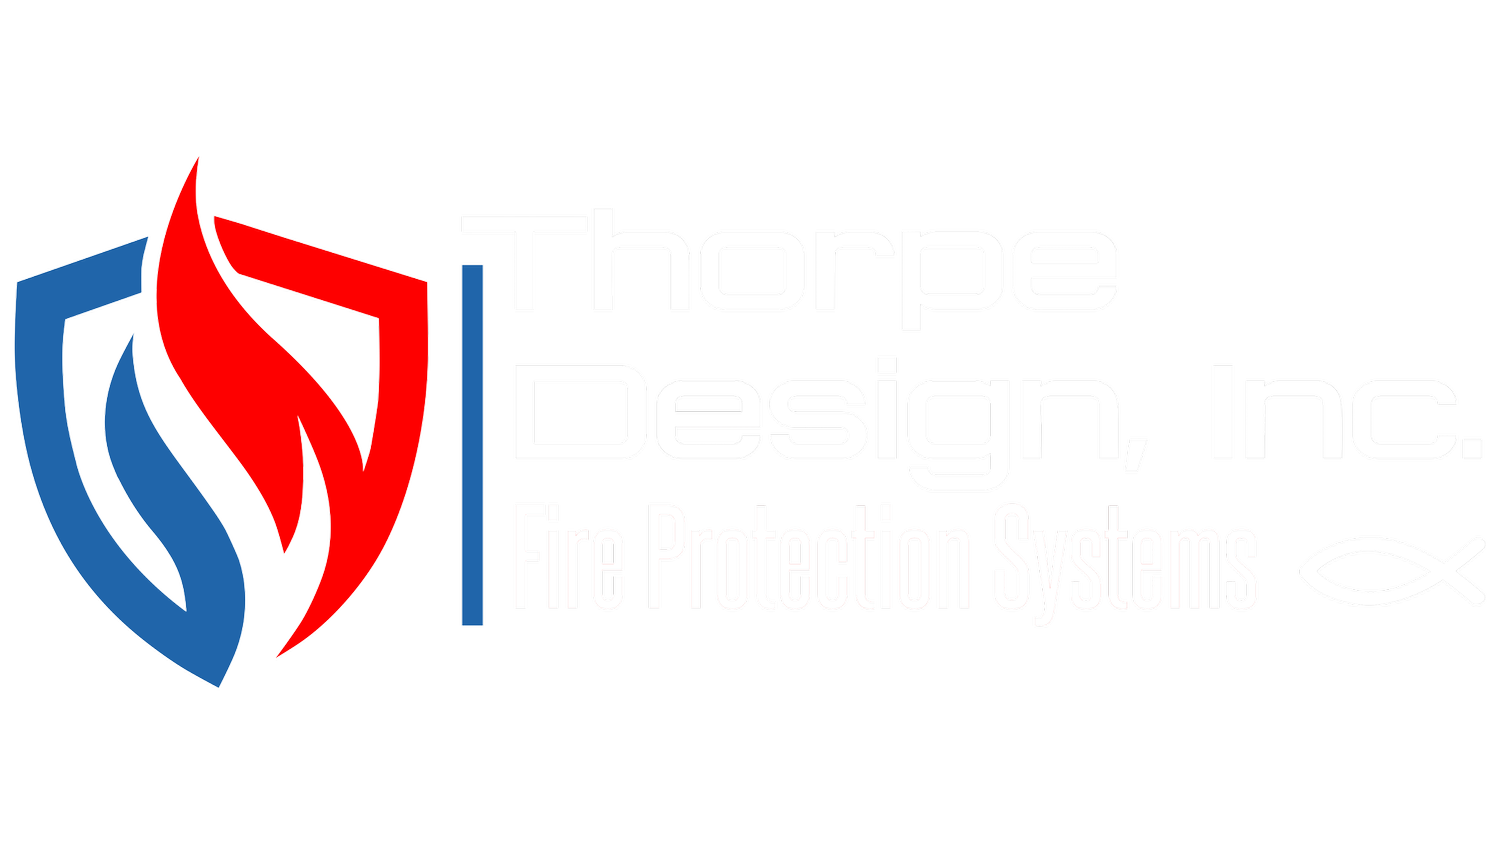 Thorpe Design Inc.